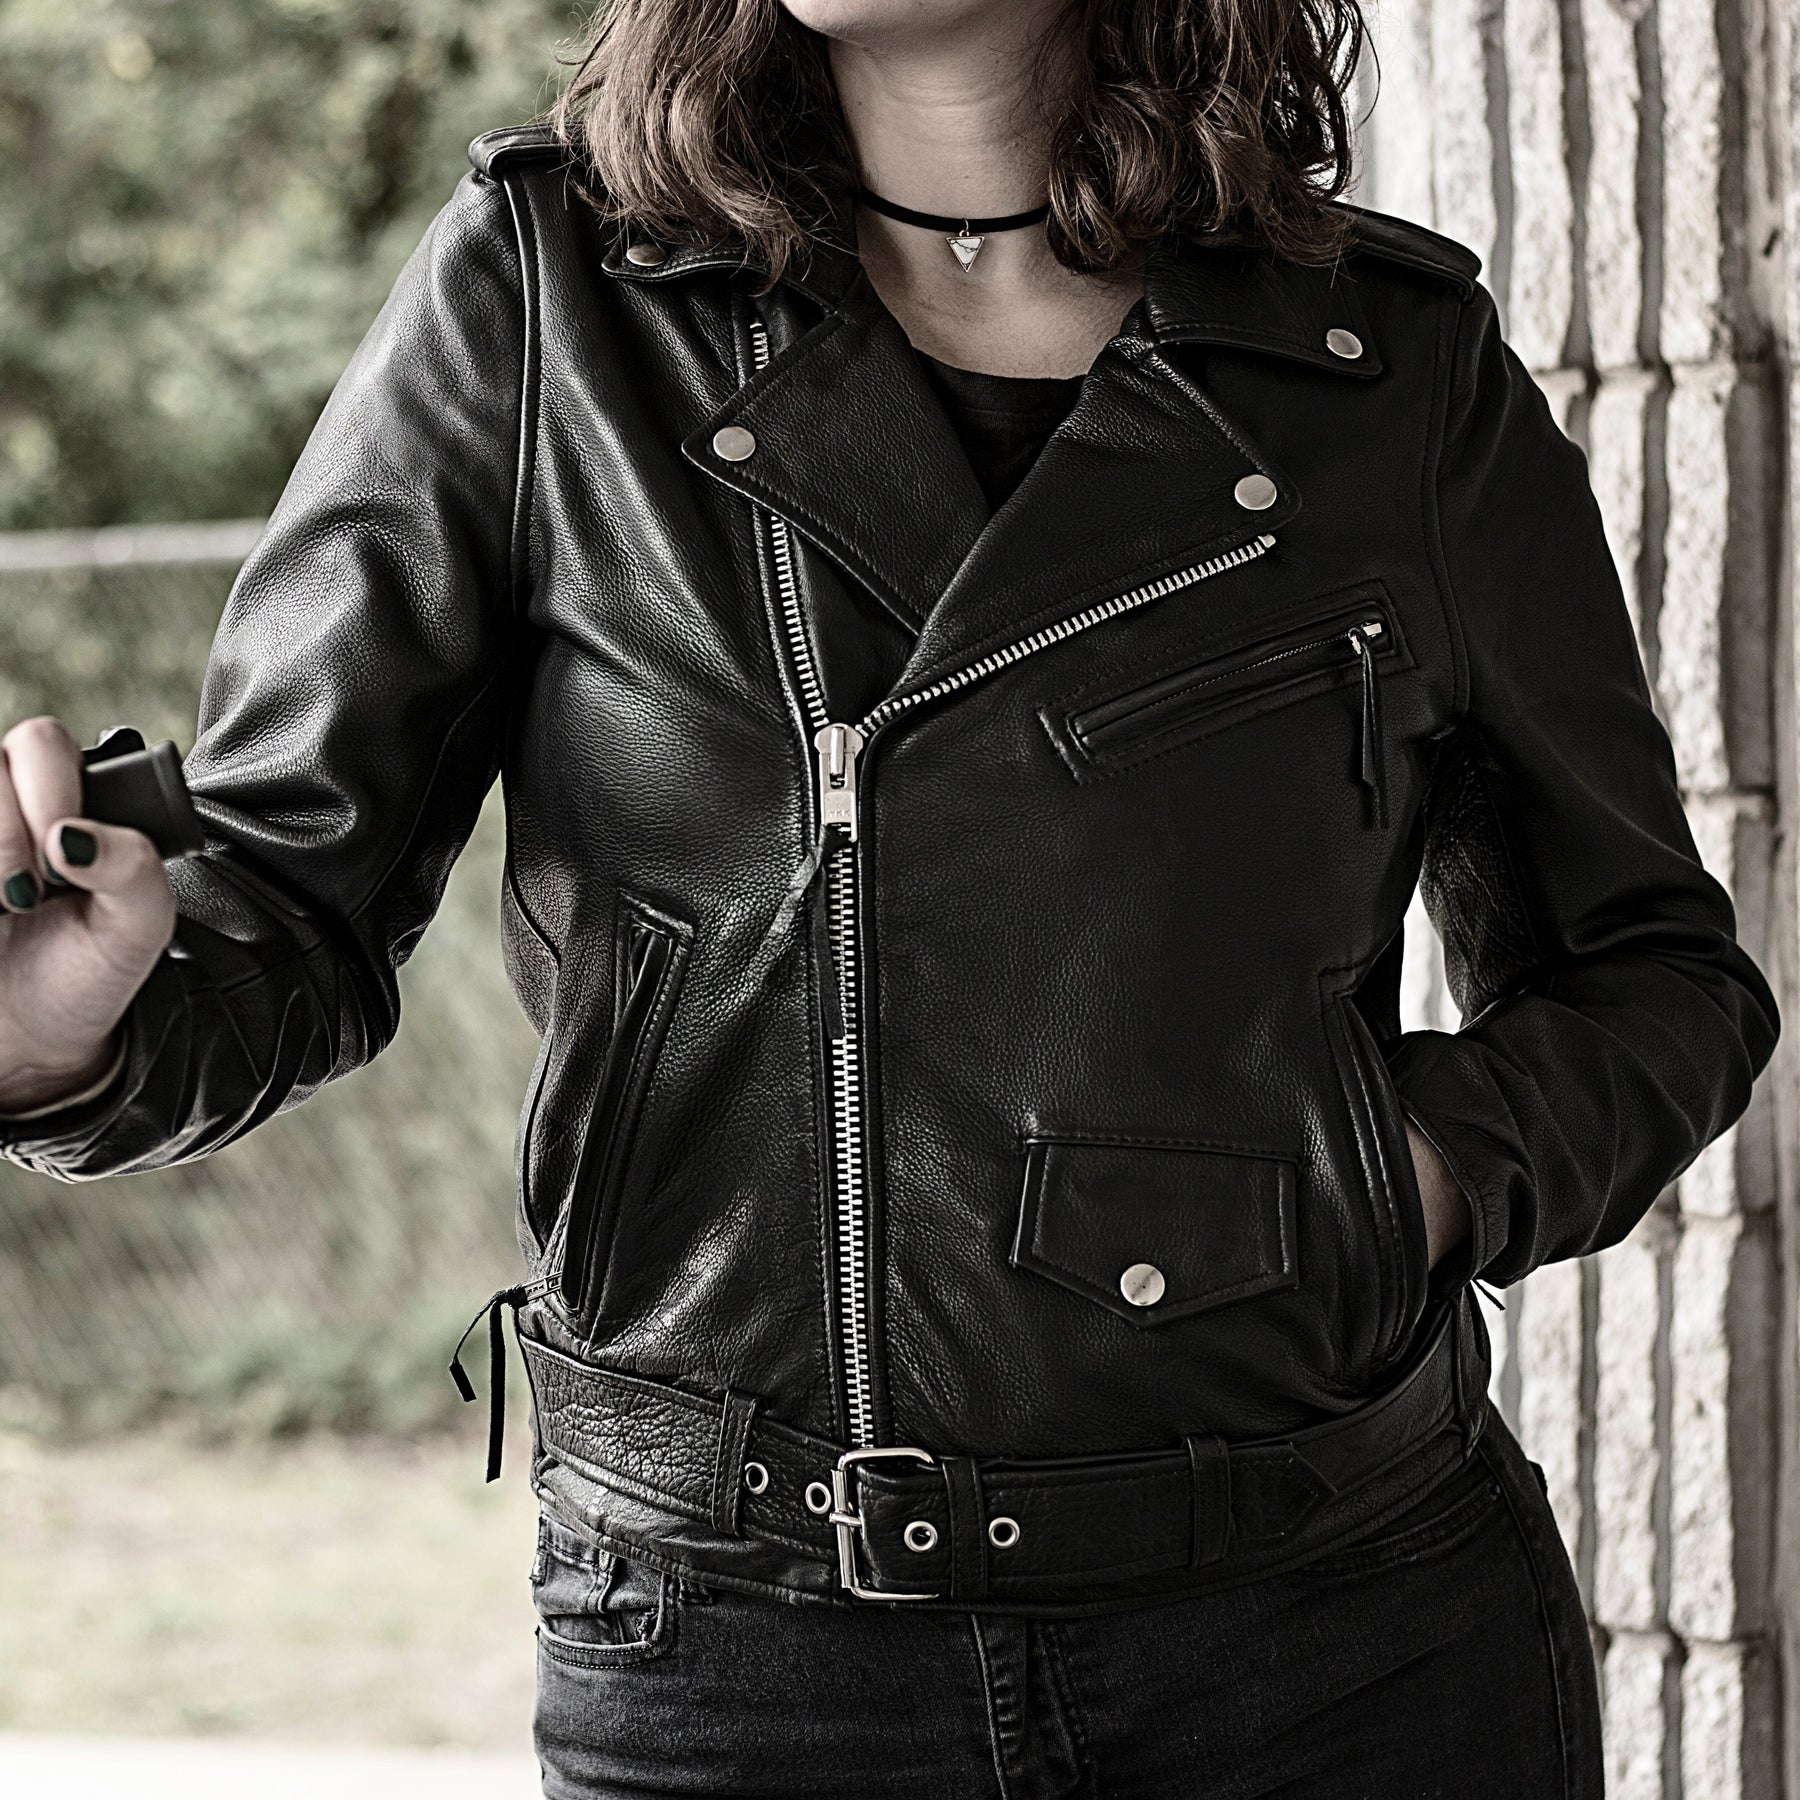 SUPASTAR LADY Motorcycle Leather Jacket Women's Jacket Best Leather Ny   